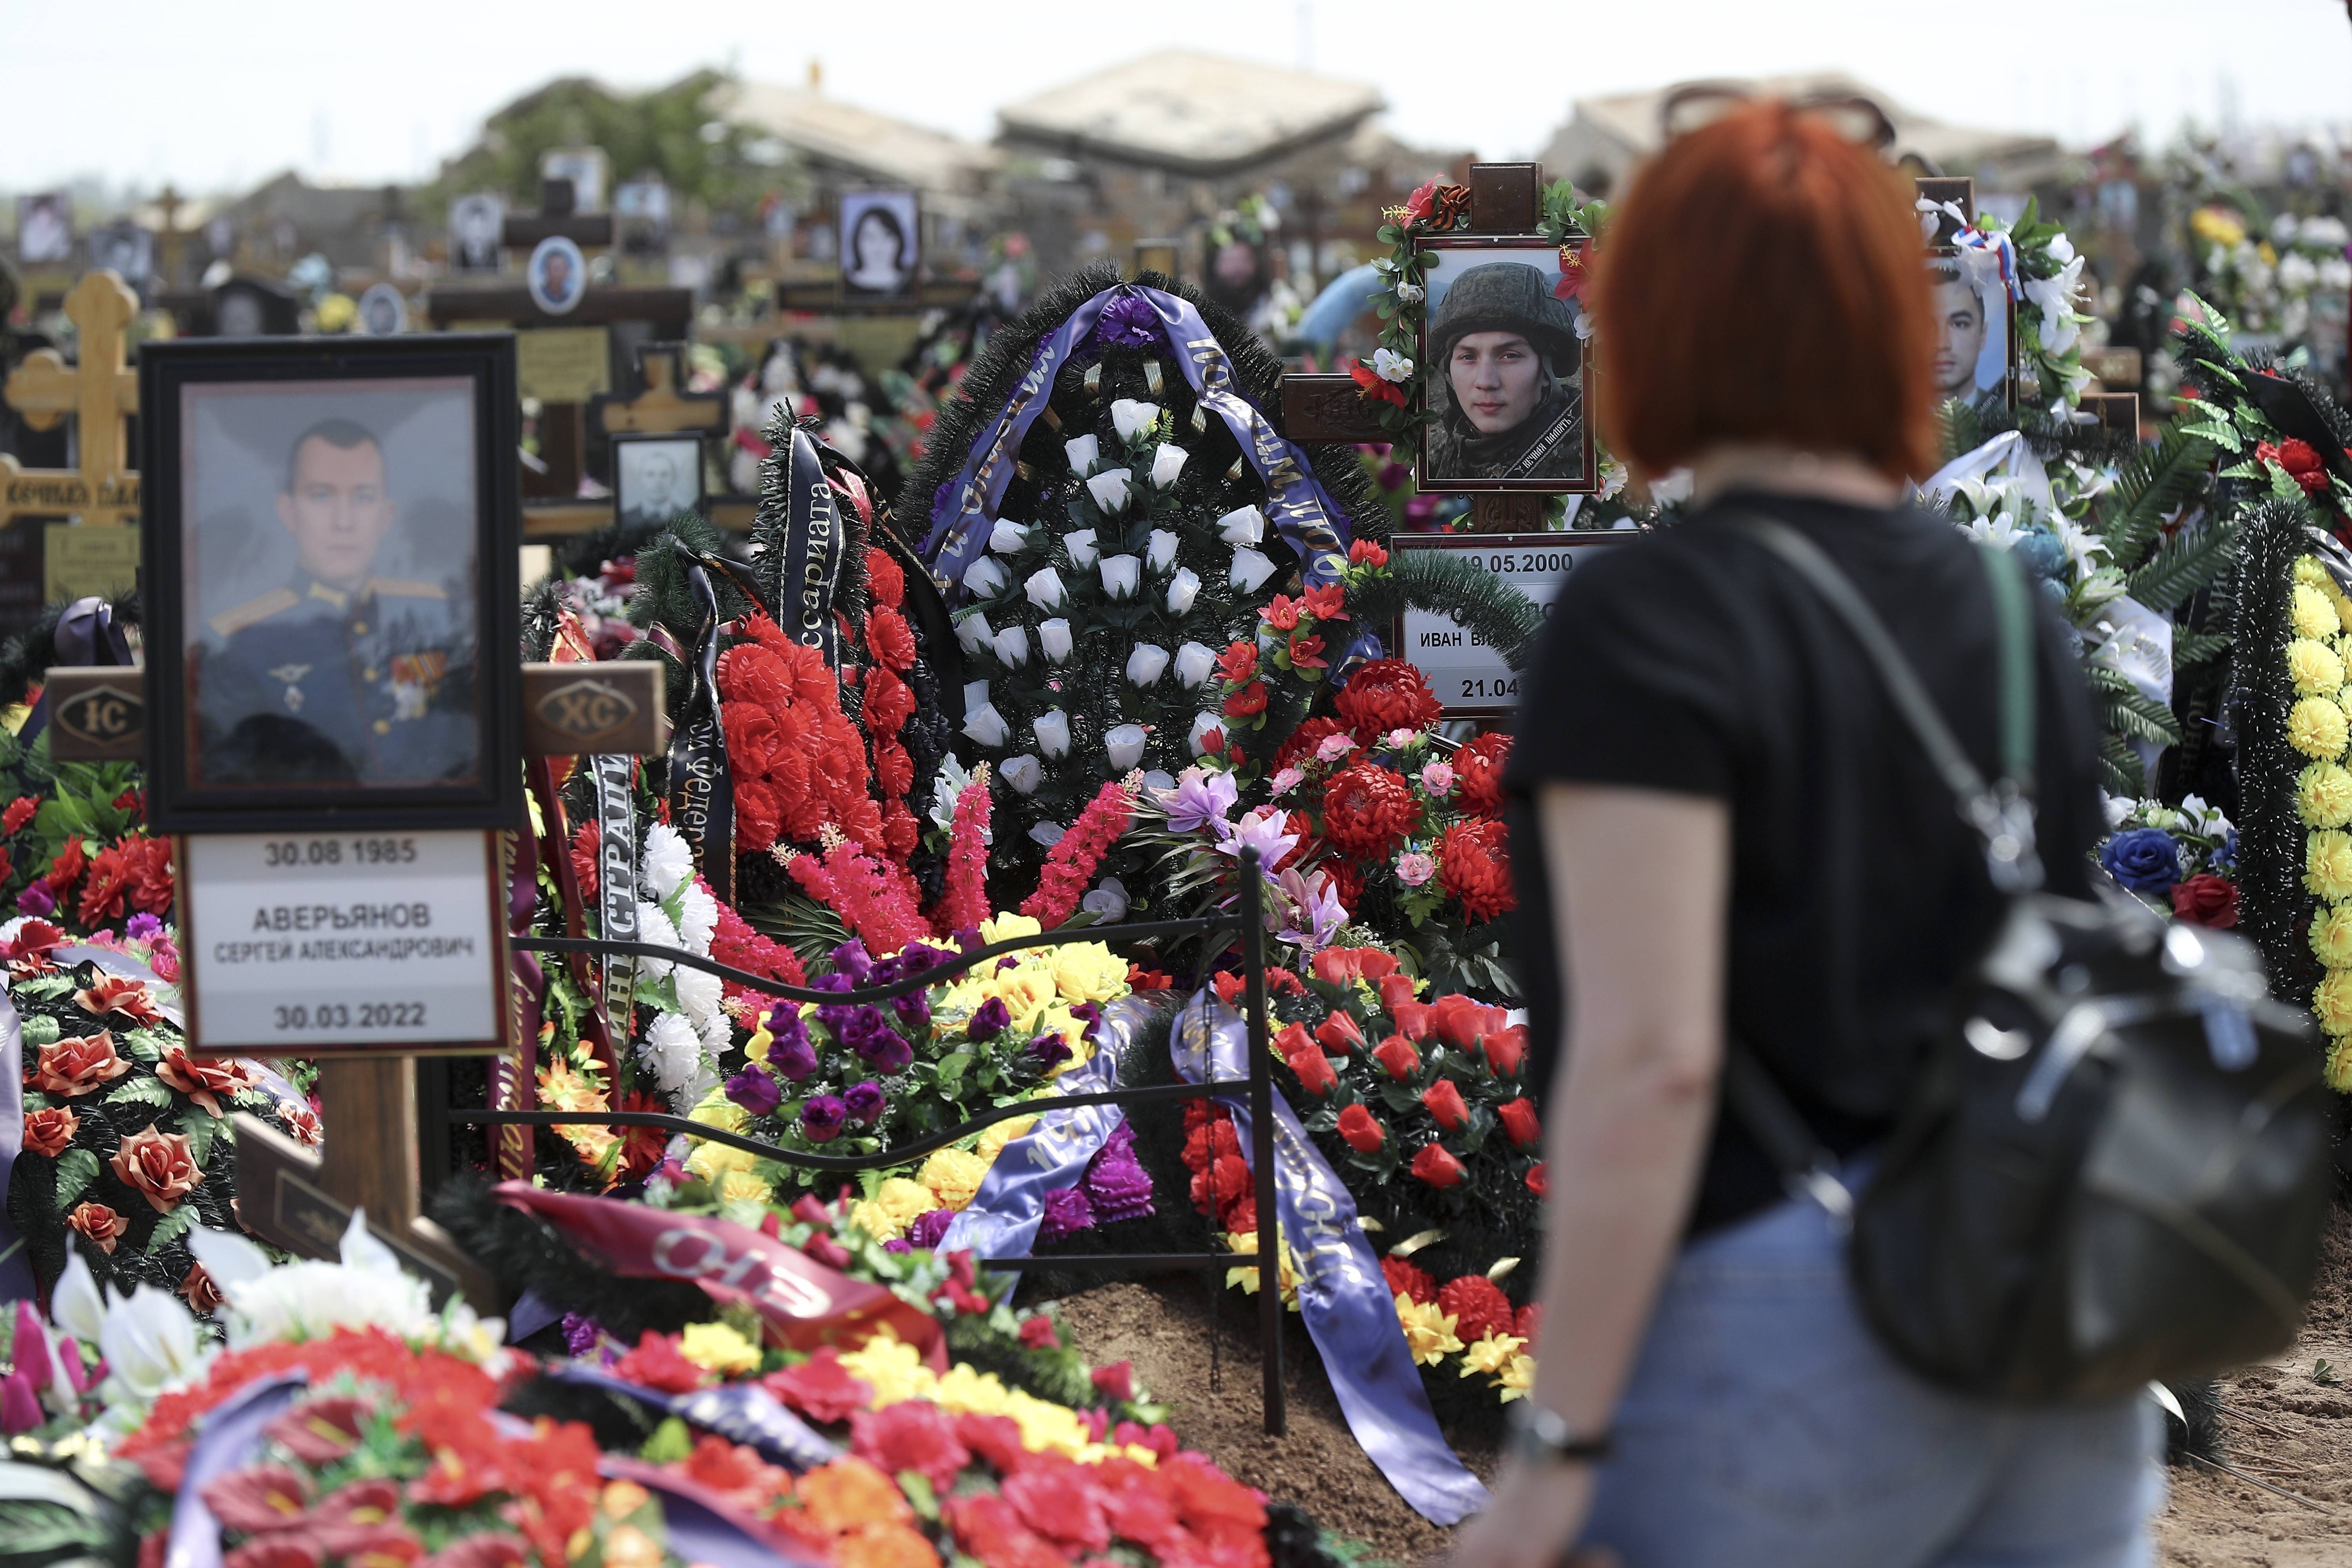 Près de Volgograd (Russie), une femme se recueille sur les tombes de soldats russes morts au front. Si le chiffre global de tués est caché par l'État, les Si les chiffres globaux de tués au front sont cachés par l'État russe, les soldats morts au combat sont néanmoins portés en héros.  AP Photo